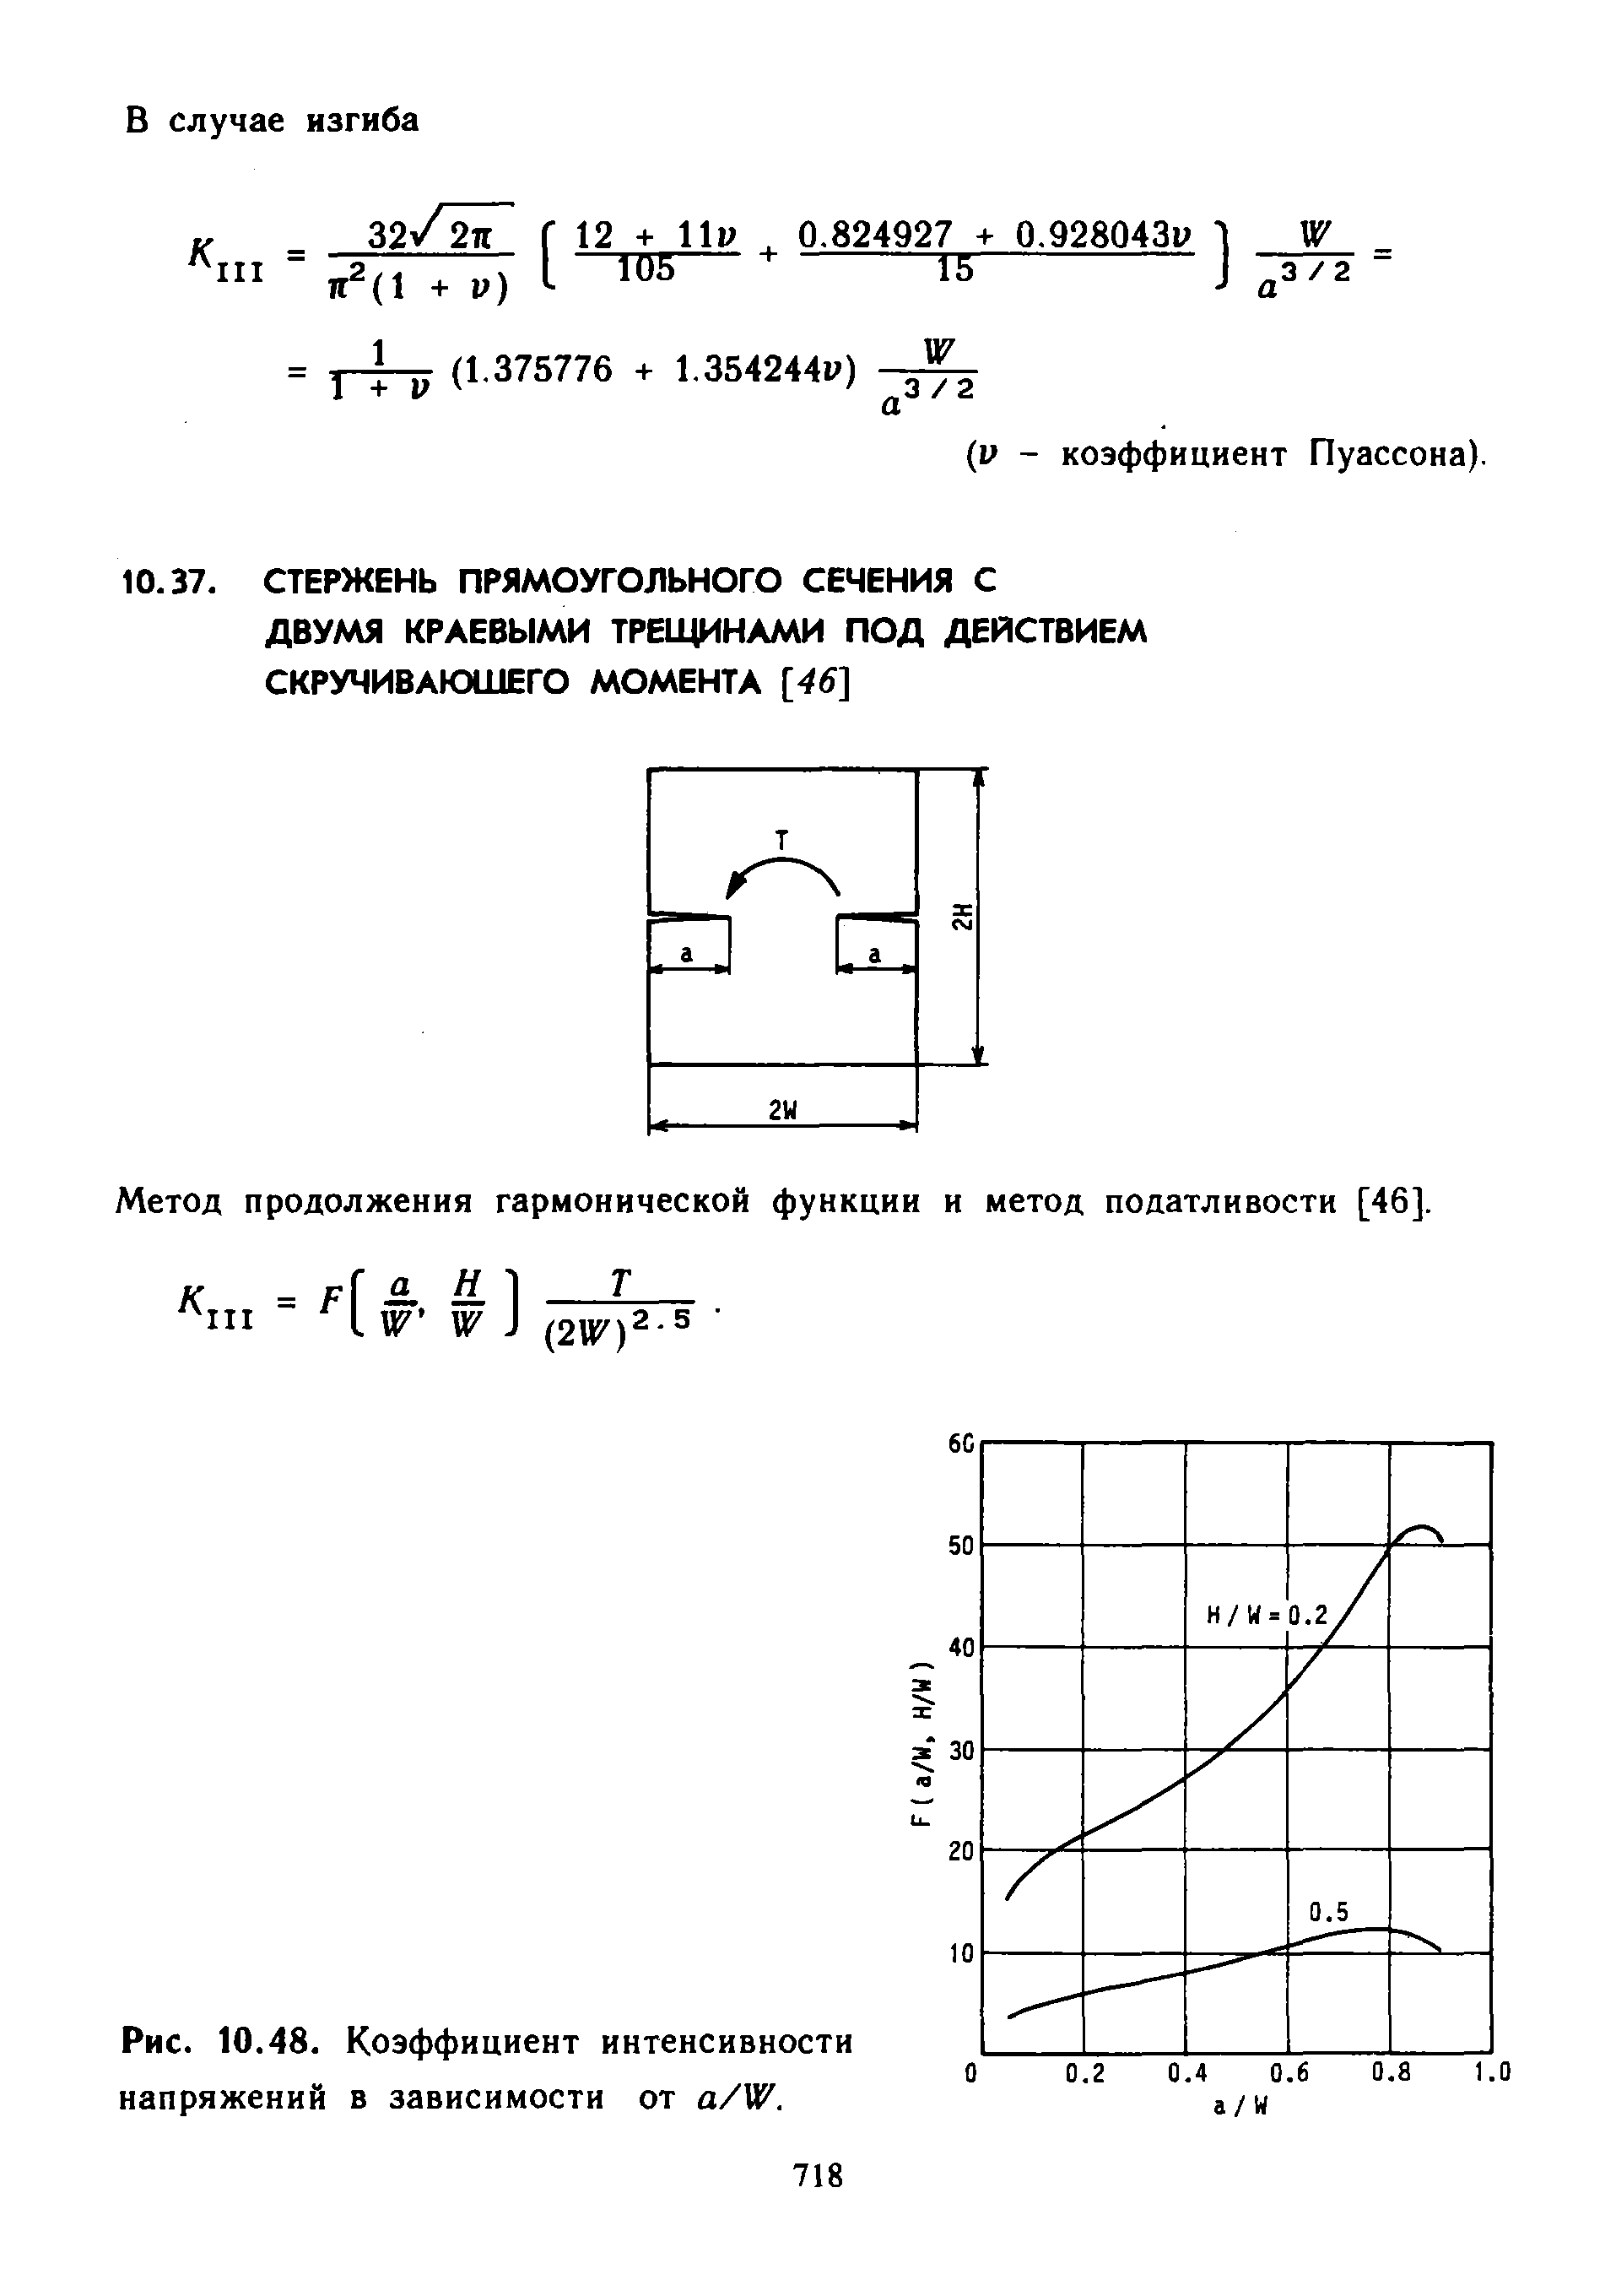 Метод продолжения гармонической функции и метод податливости [46].
